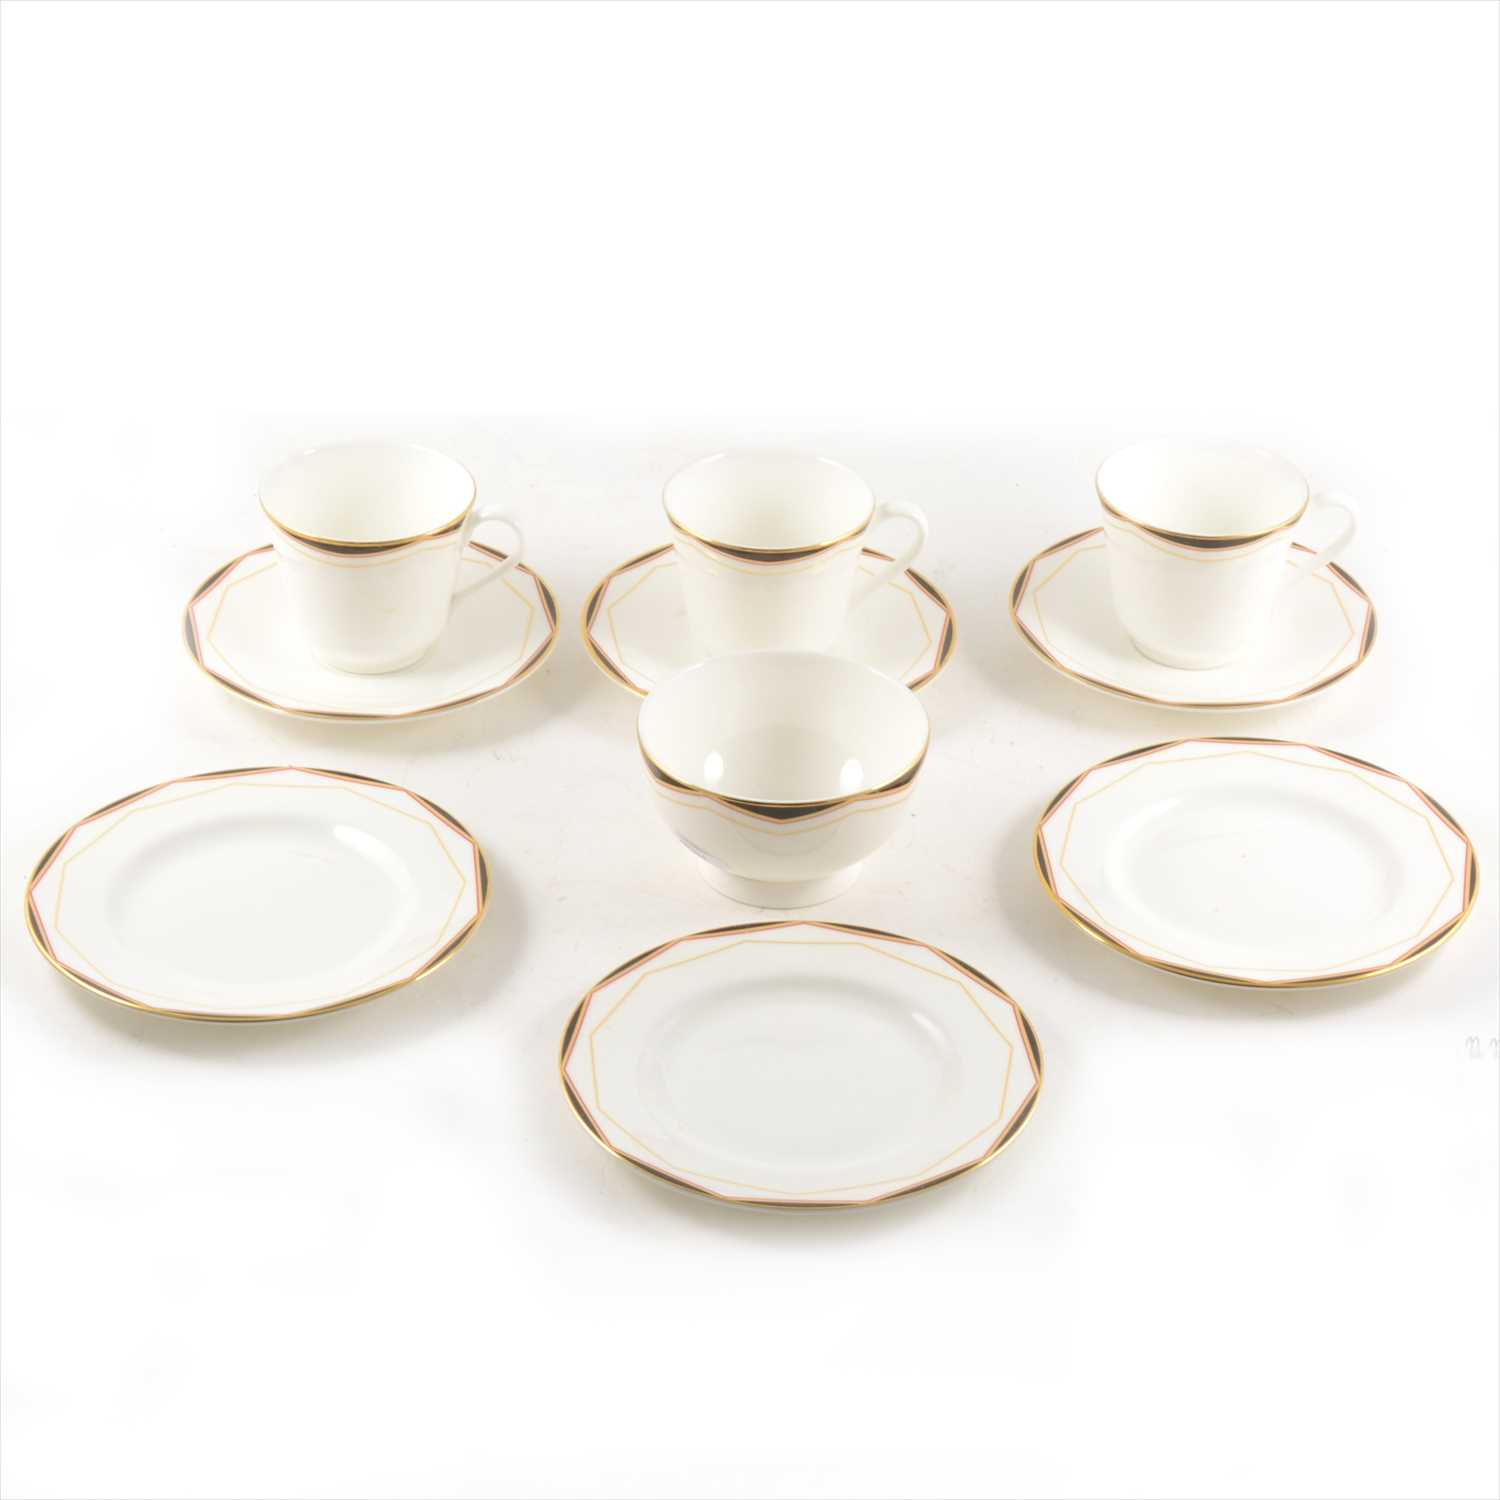 Lot 49 - Royal Doulton  bone china table service, Prism pattern.